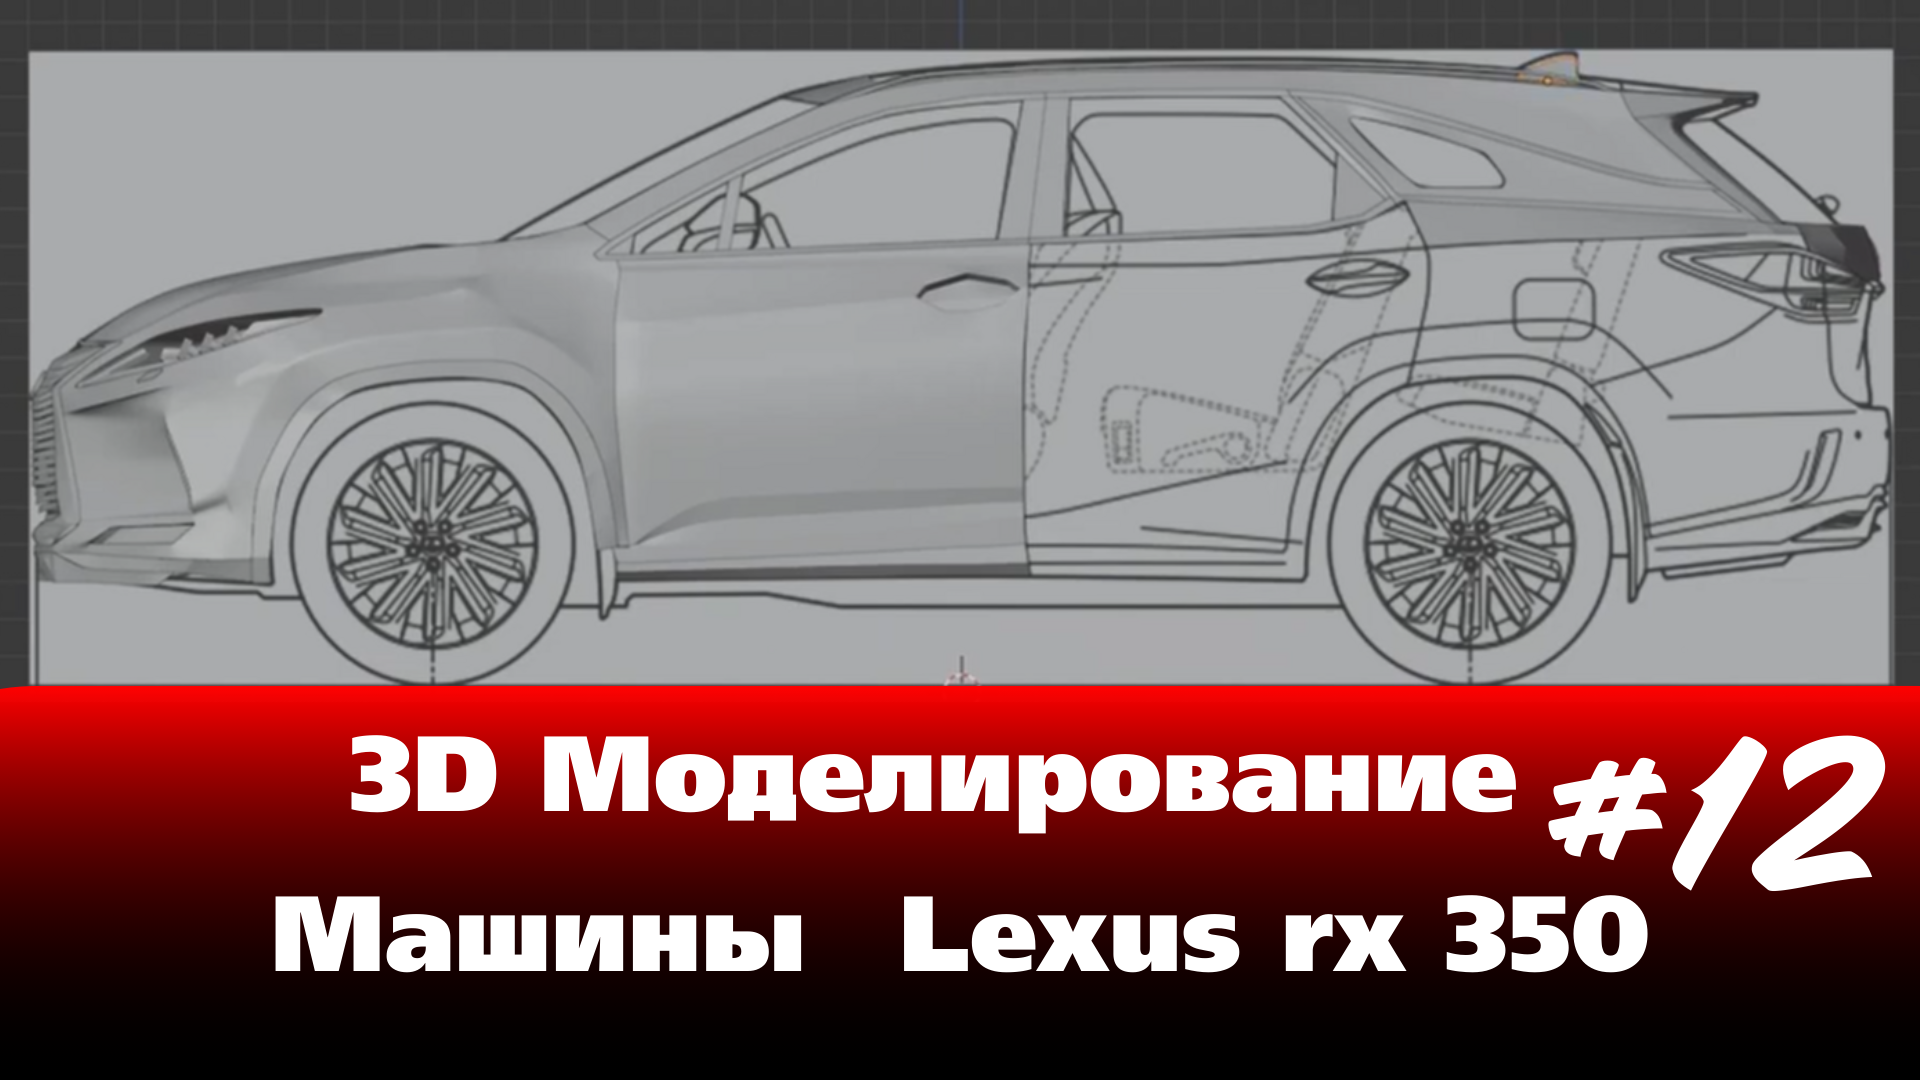 3D Моделирование Машины в Blender - Lexus rx 350 часть 12 #Blender